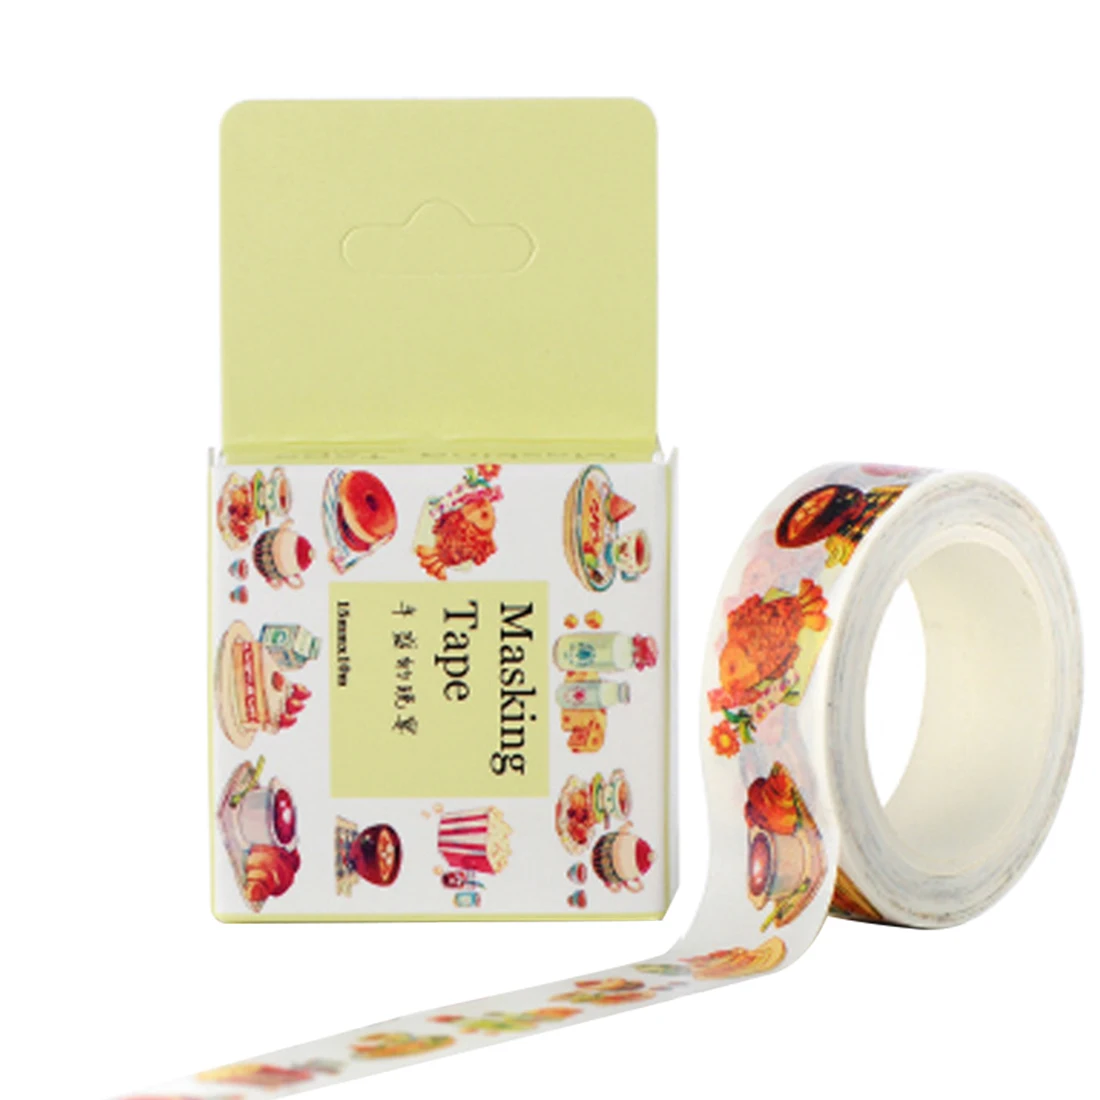 FangNymph милый каваи Многоэлементный японский маскирующий васи лента декоративная клейкая лента наклейка этикетка канцелярские принадлежности - Цвет: Hearty dinner